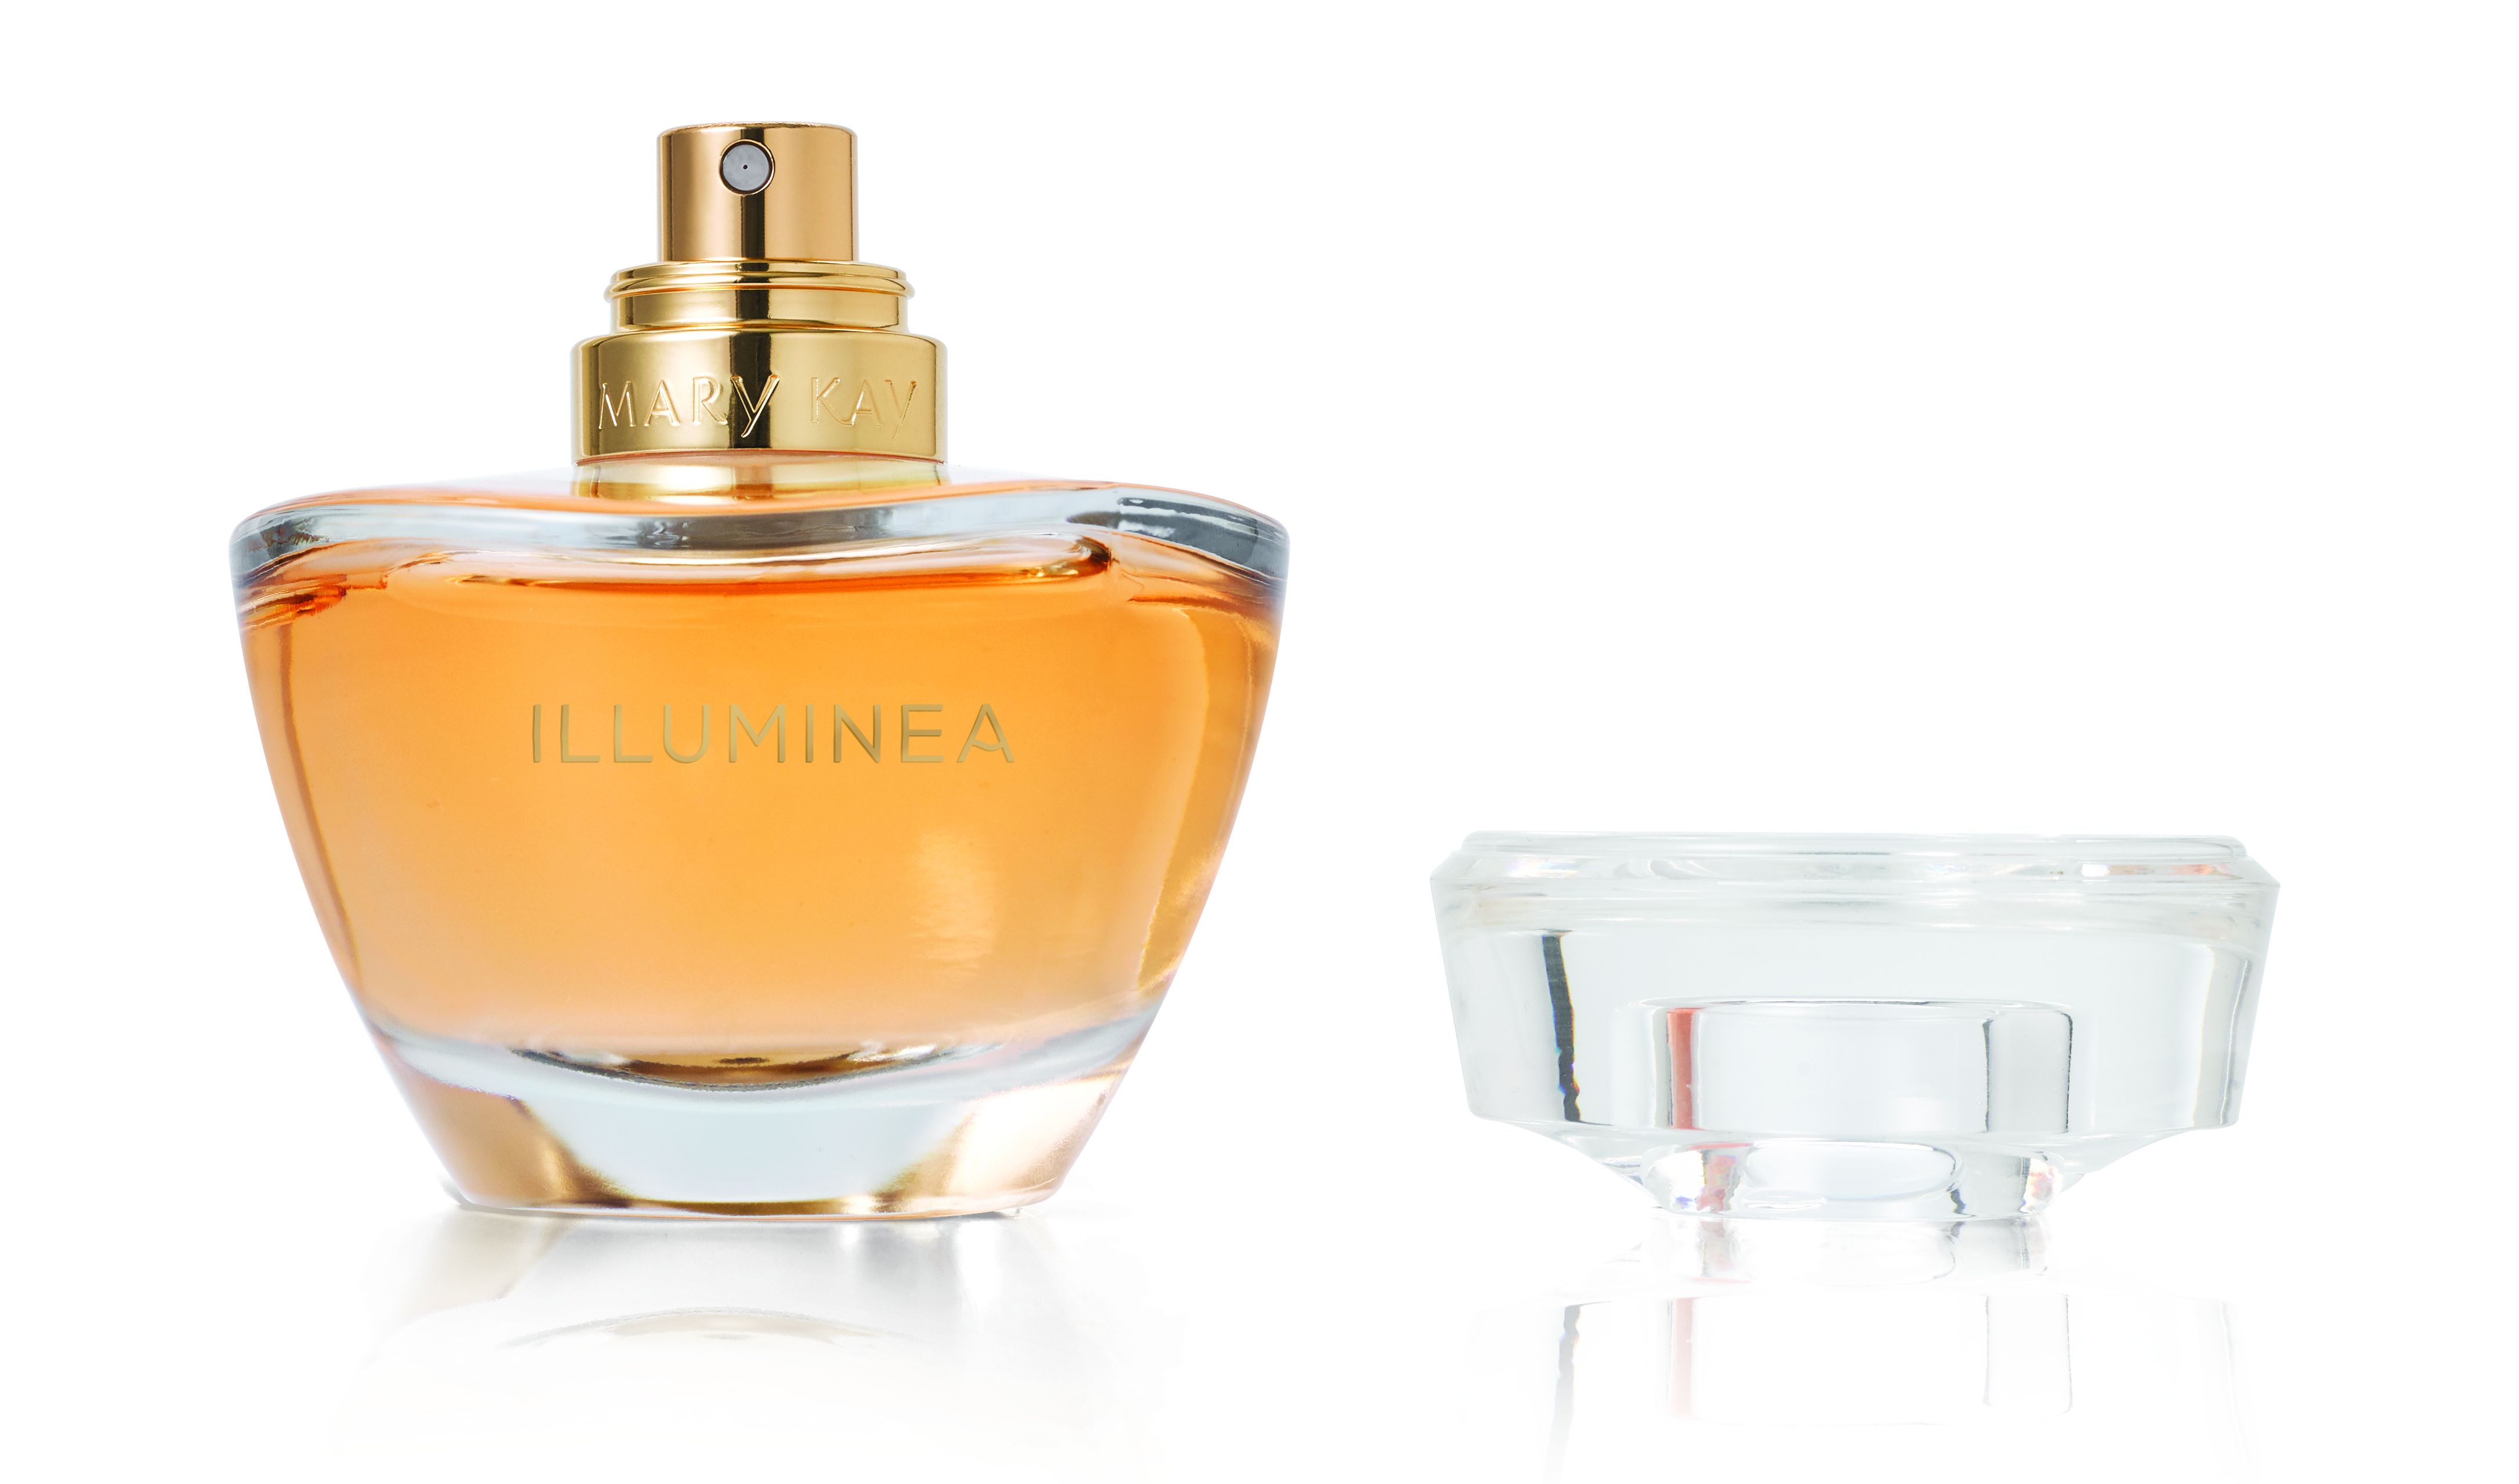 Illuminea Mary Kay perfume - a novo fragrância Feminino 2020